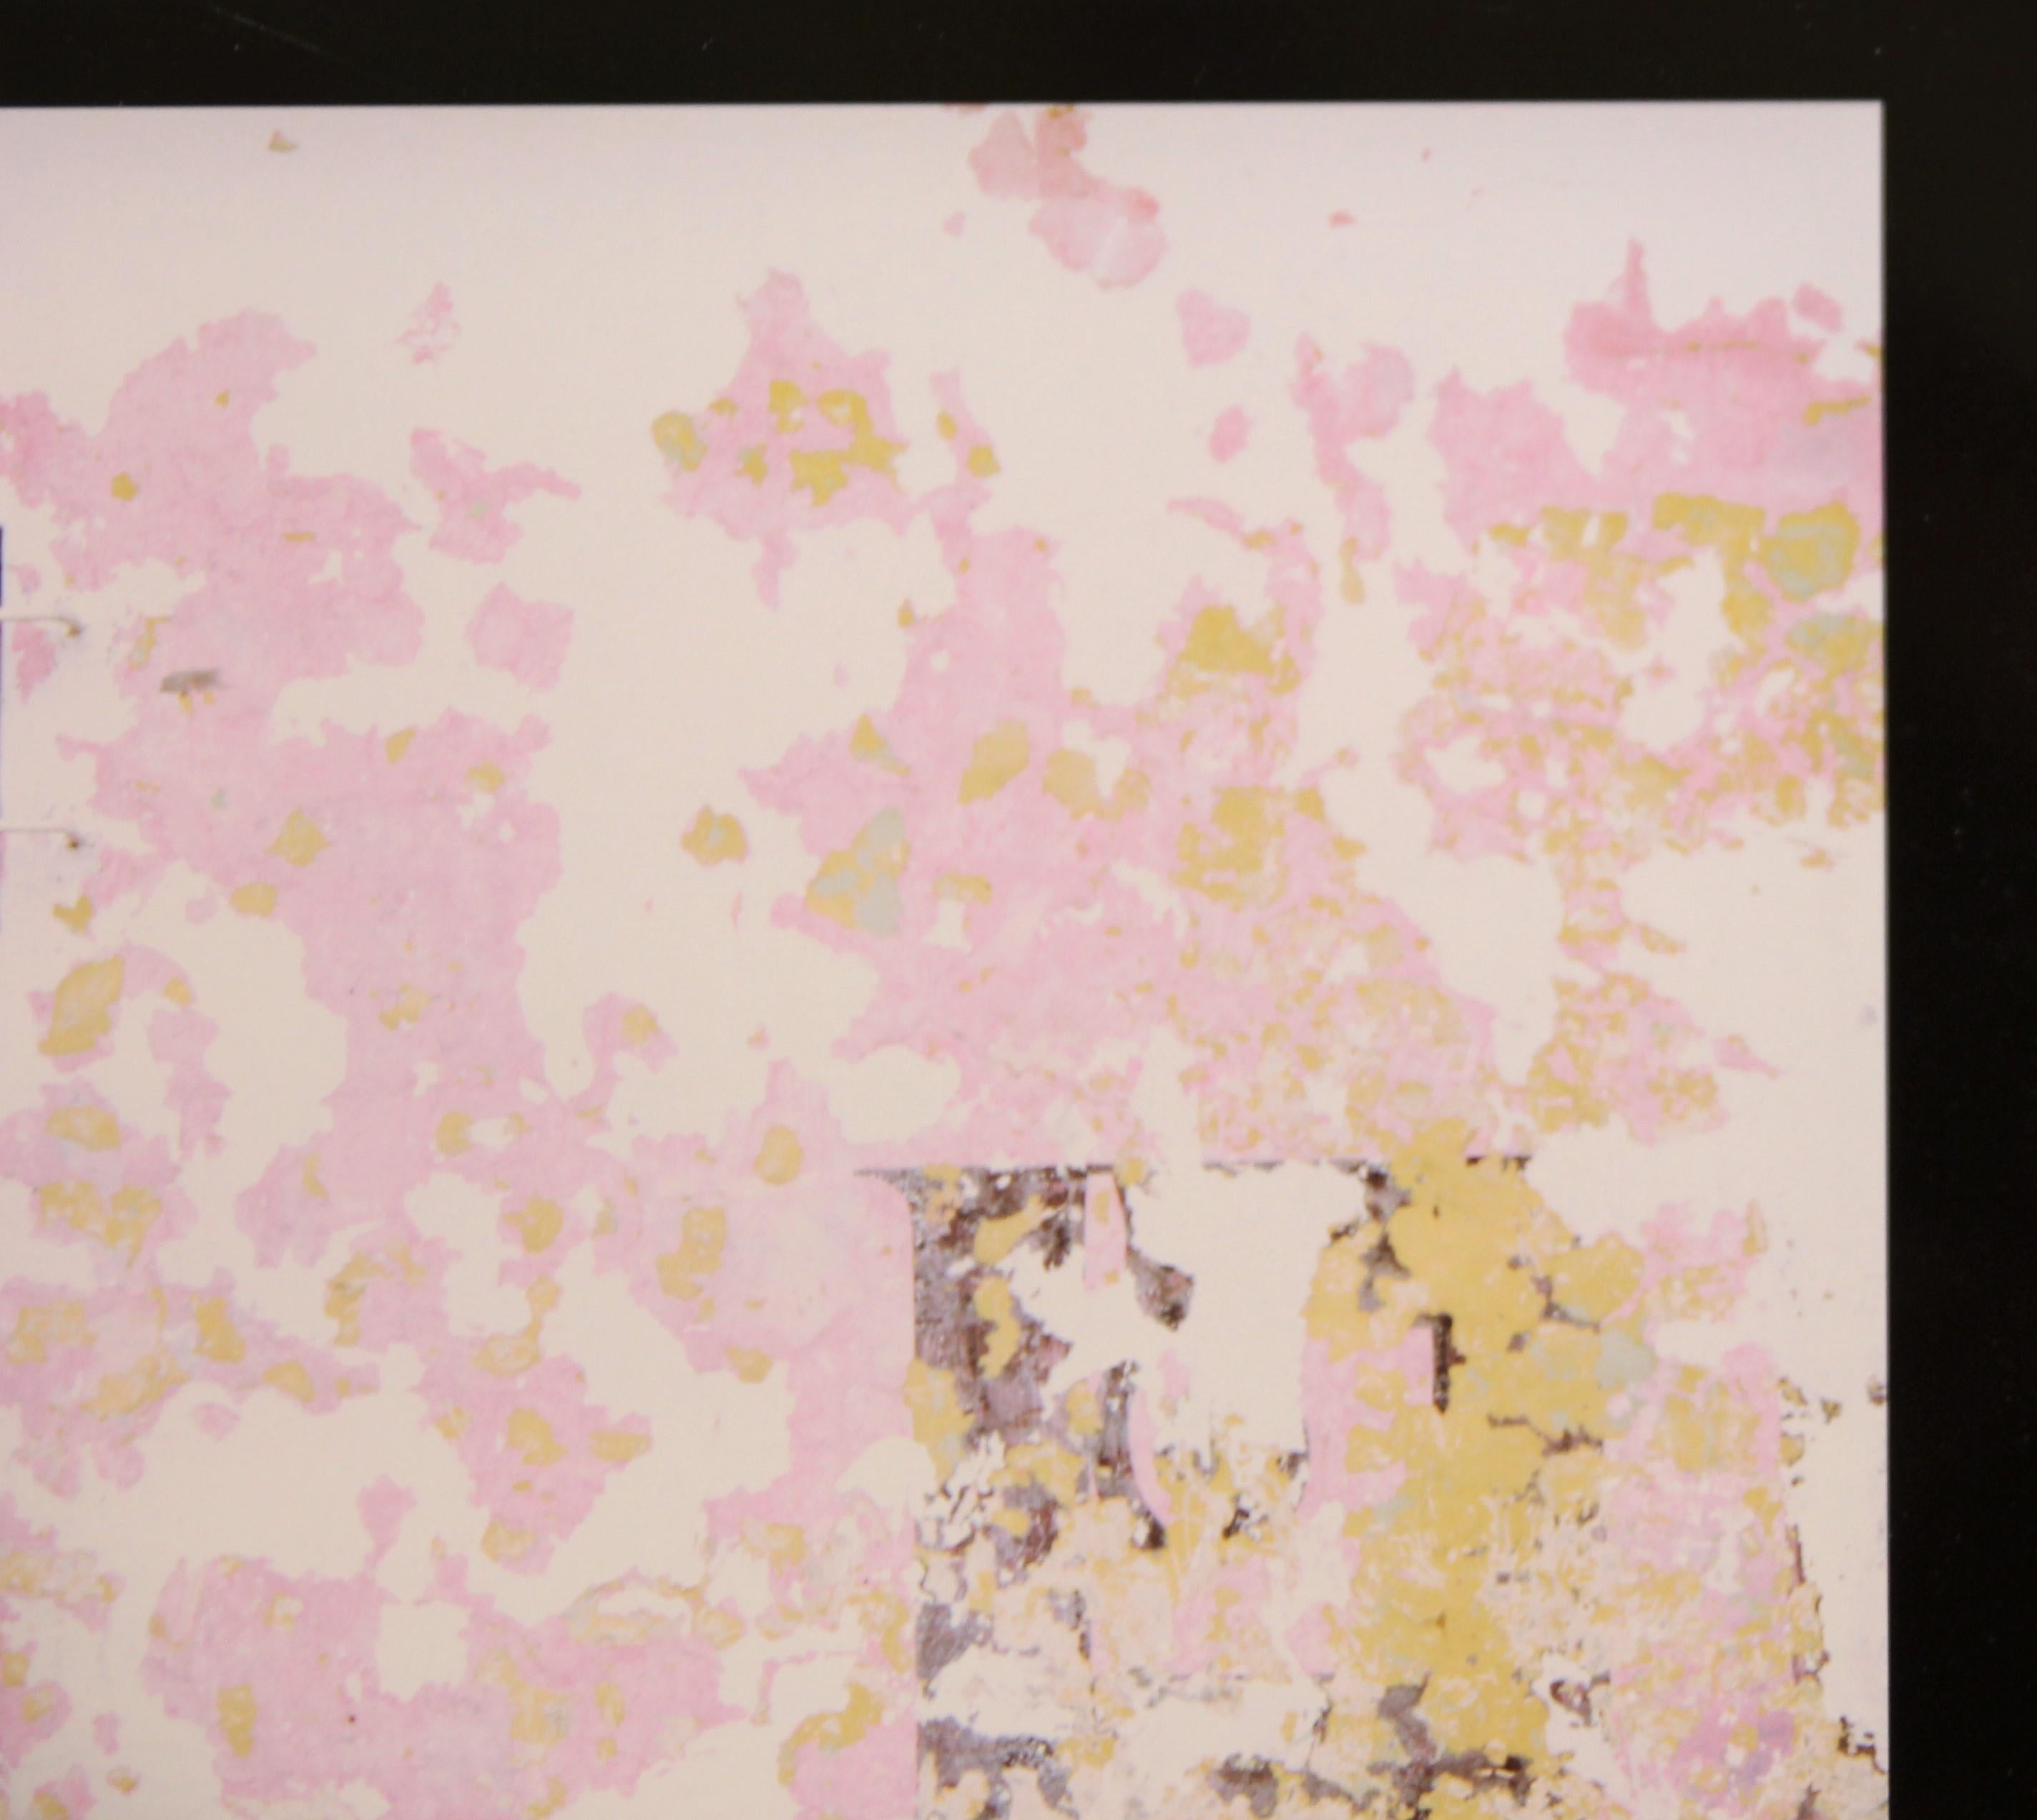 Photographie abstraite moderne du côté d'un bâtiment avec des accents roses et dorés, réalisée par l'artiste texan Mark Greene. La fenêtre décentrée est équilibrée par l'extension du tapis noir sur le côté droit. Actuellement non encadré, mais des